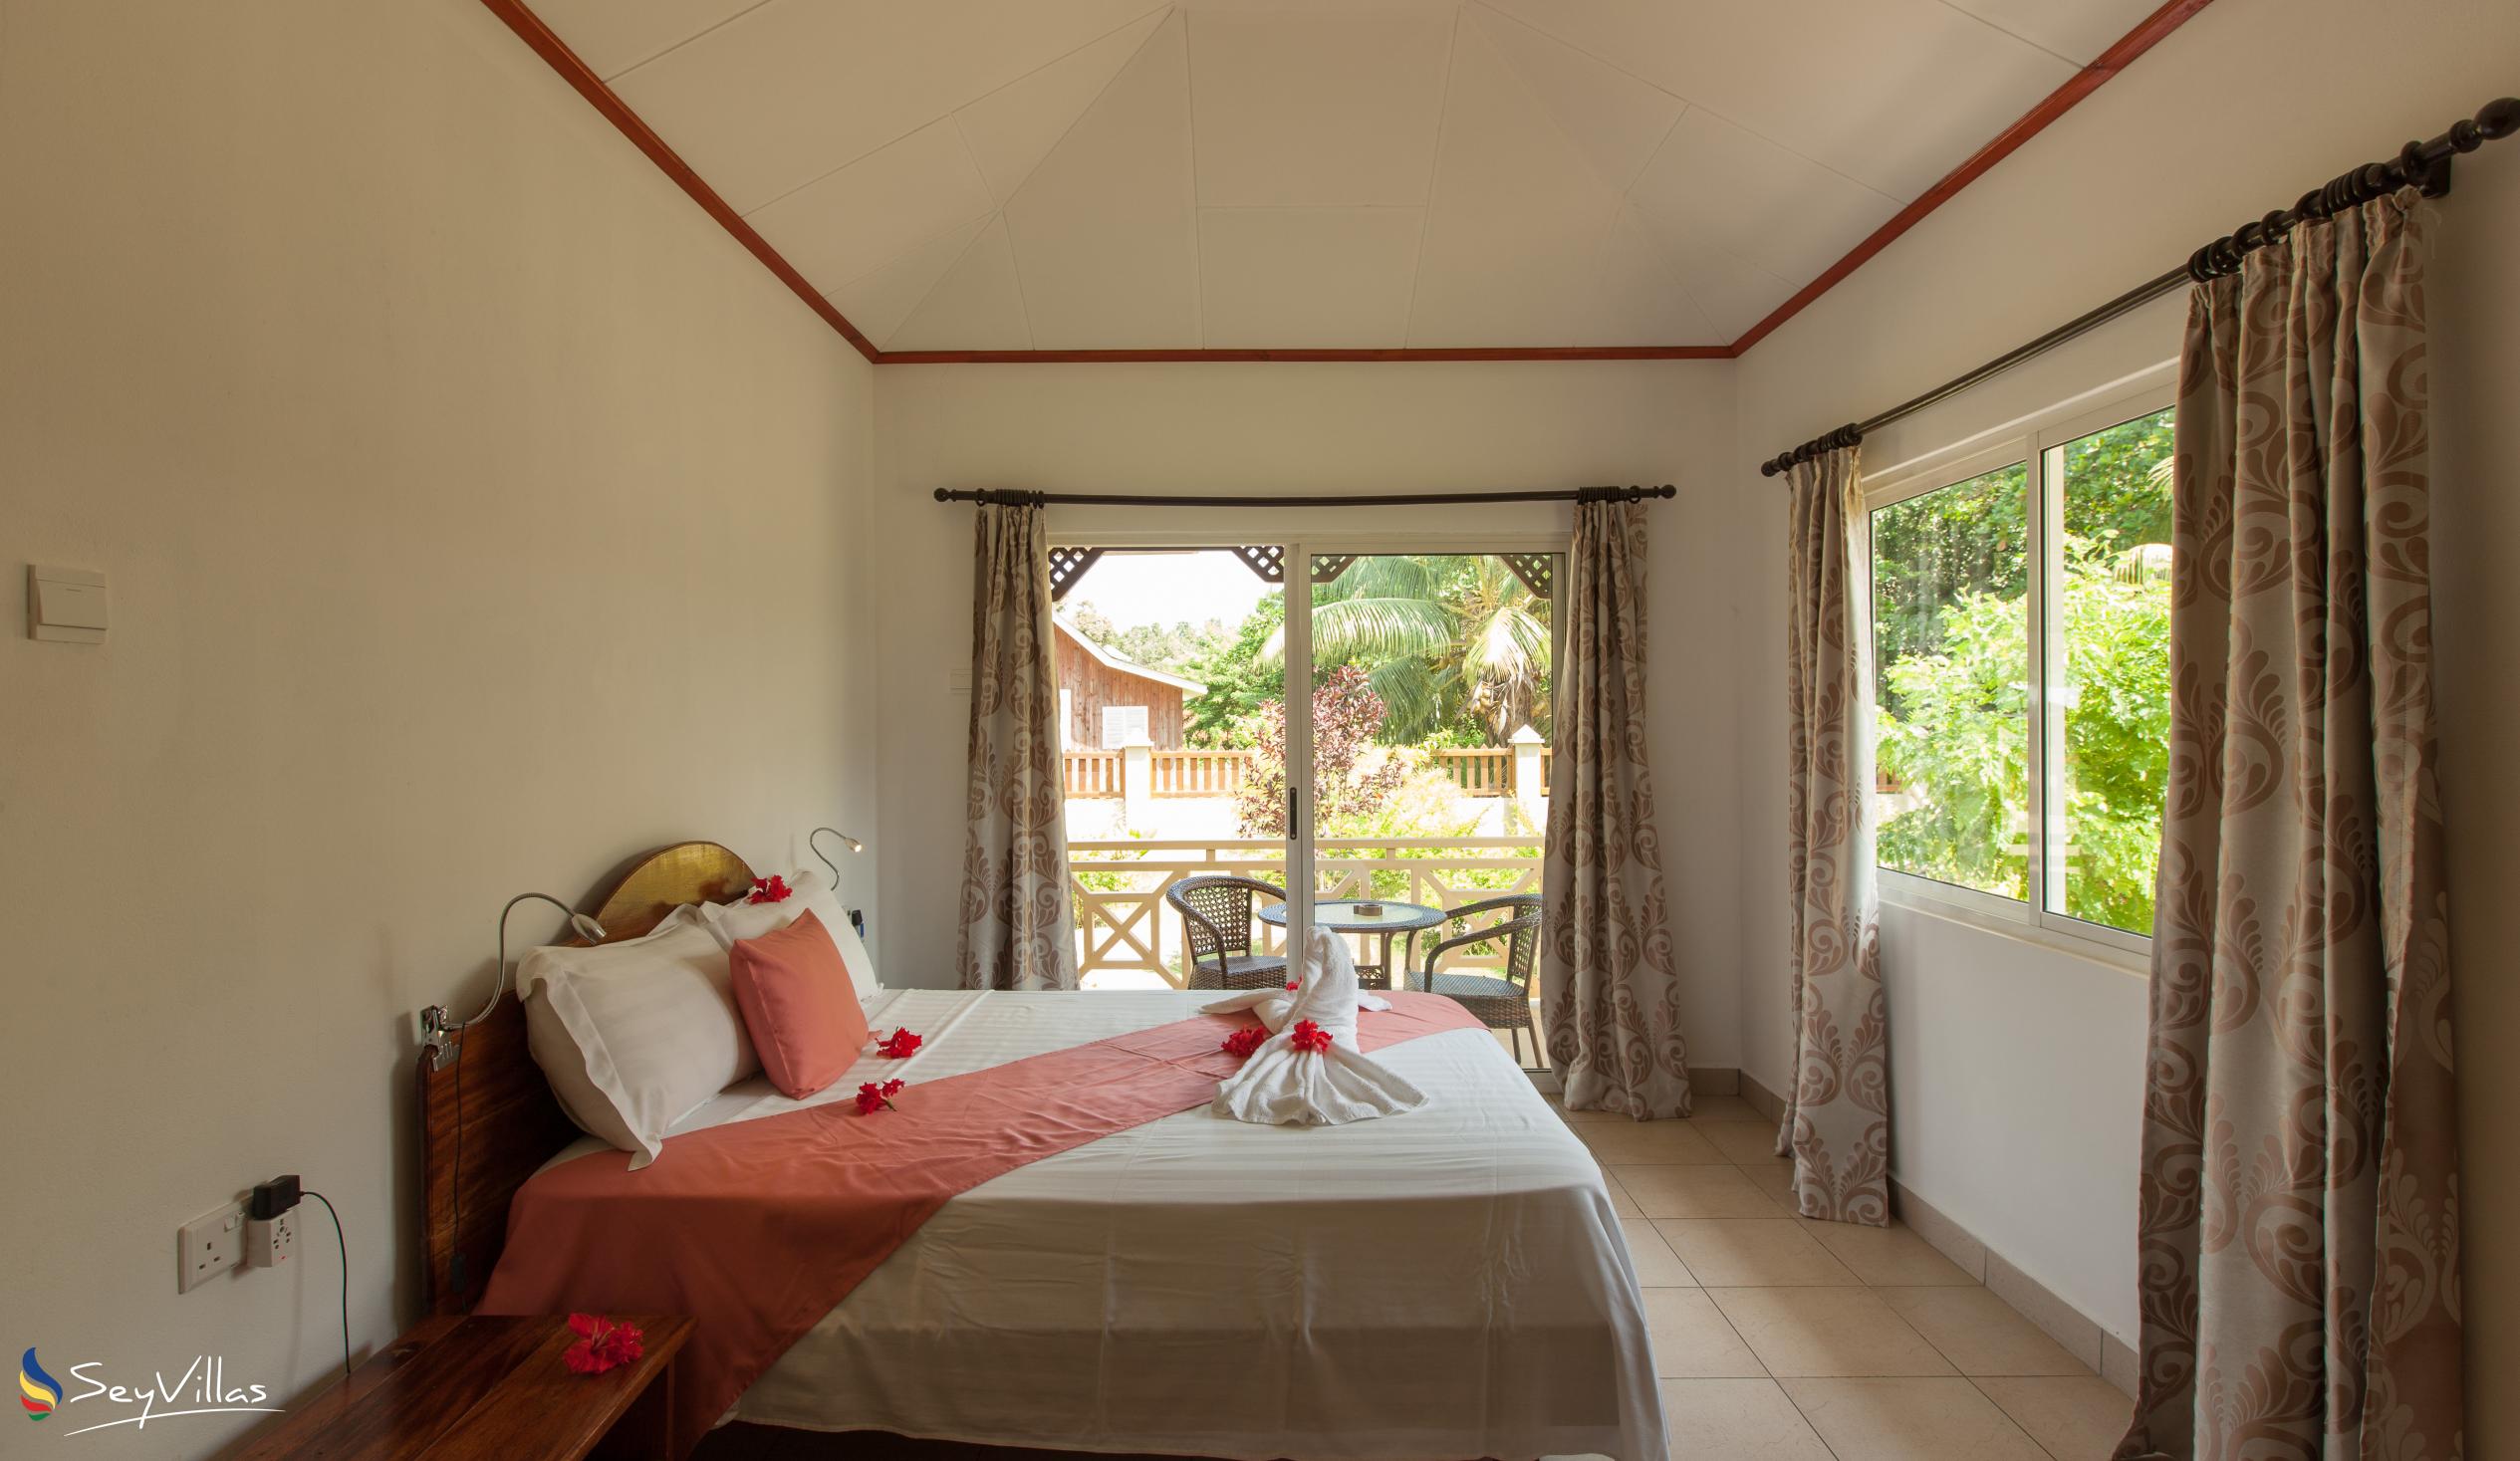 Photo 47: Hostellerie La Digue - 2-Bedroom Chalet - La Digue (Seychelles)